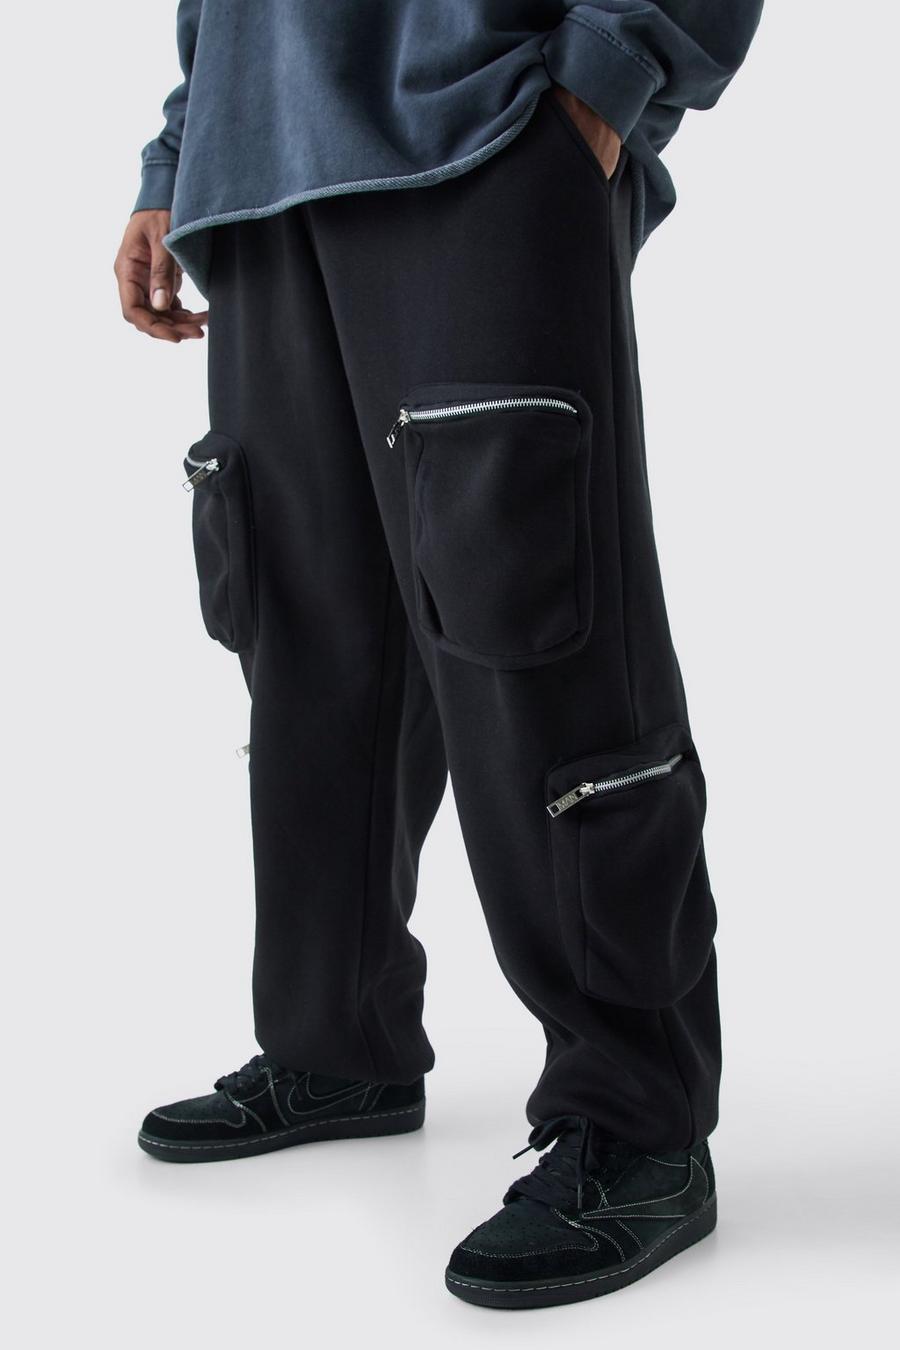 Pantaloni tuta Plus Size stile Utility Cargo, Black image number 1